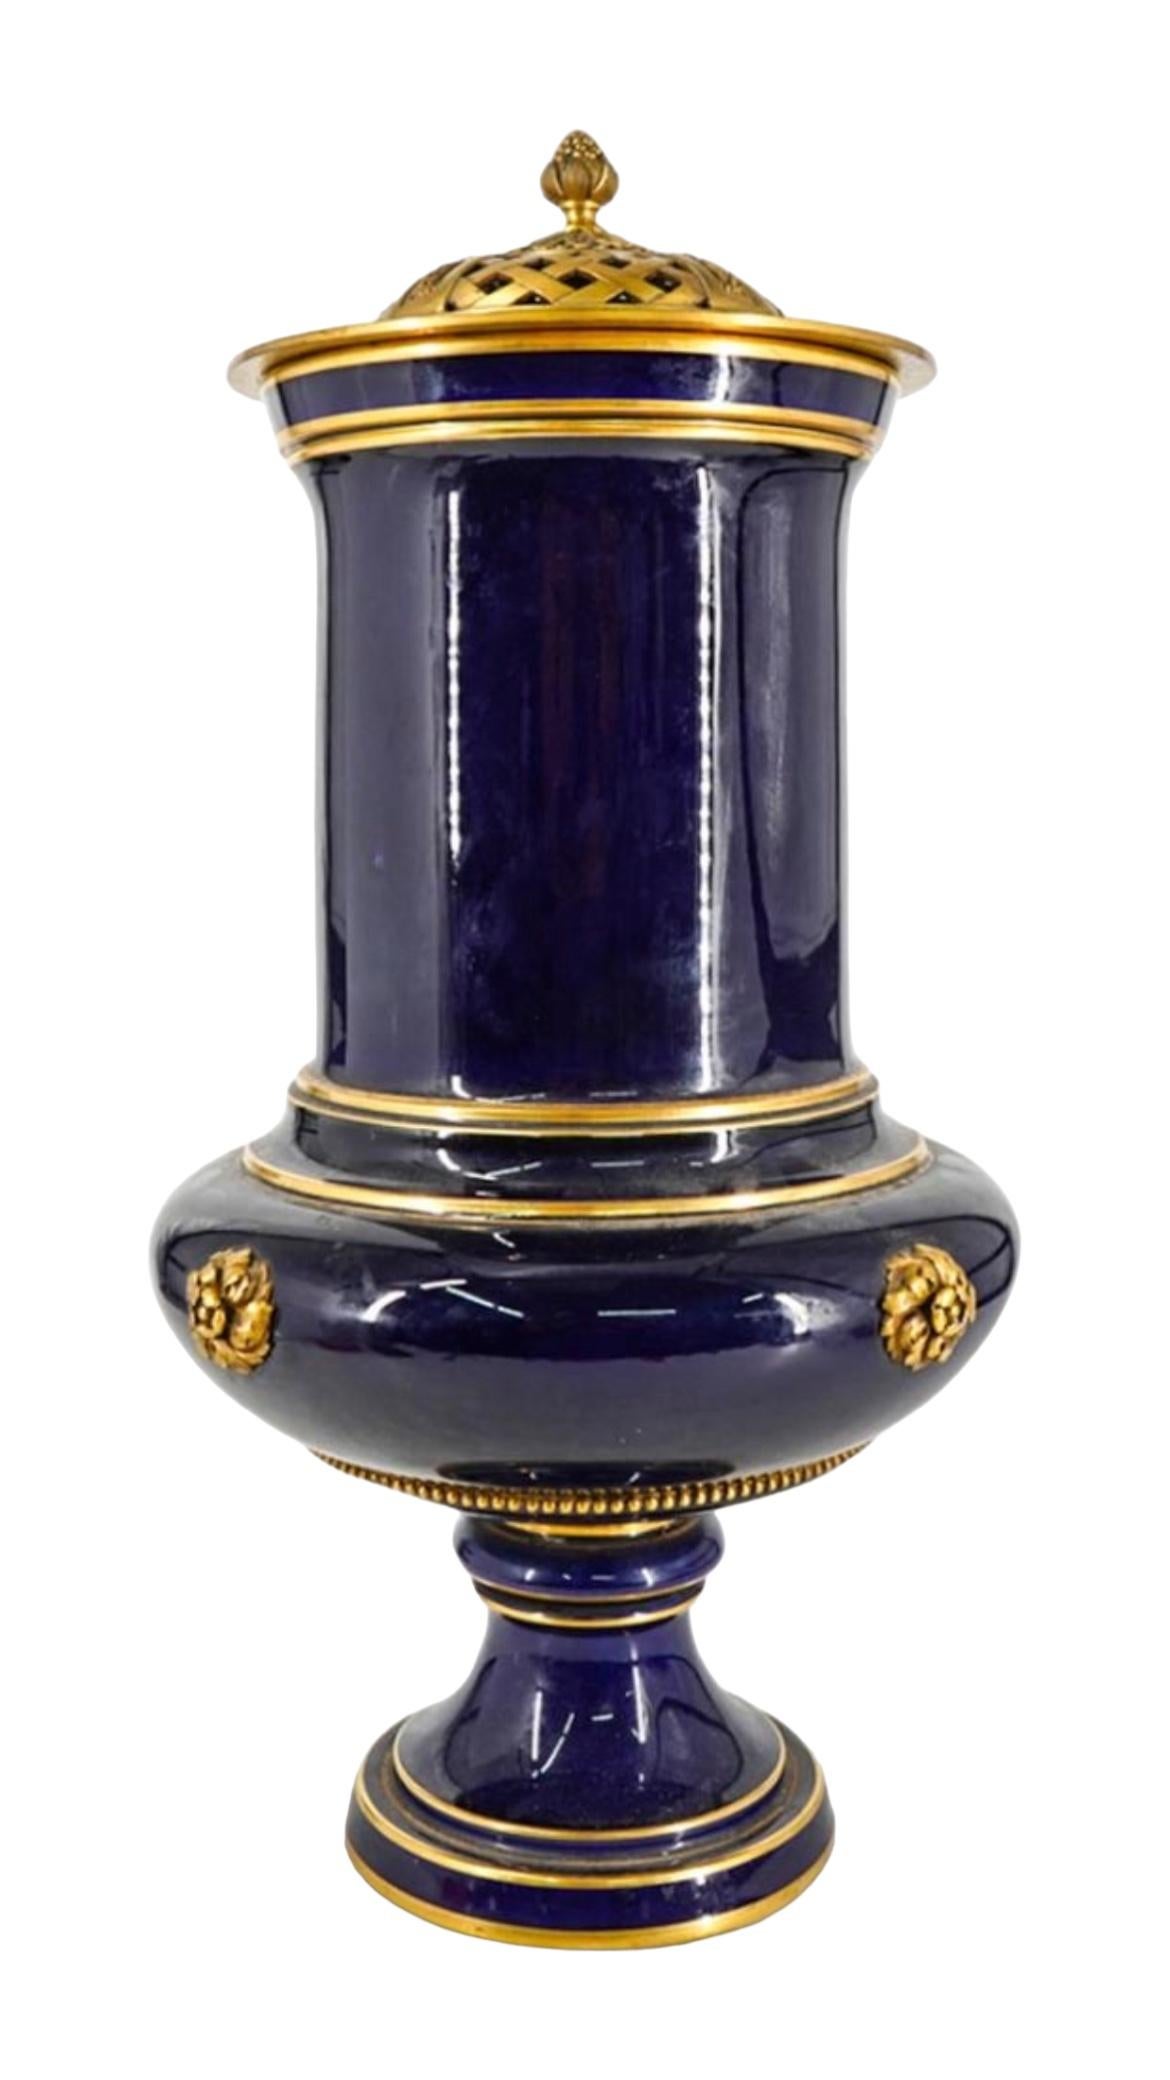 Precioso y gran jarrón de porcelana azul cobalto y dorada con monturas de bronce de Sevres, de la época de la Belle Epoque.  Con marca del fabricante y sello de fecha de 1880.  20 3/4 por 11 pulgadas y en muy buen estado.